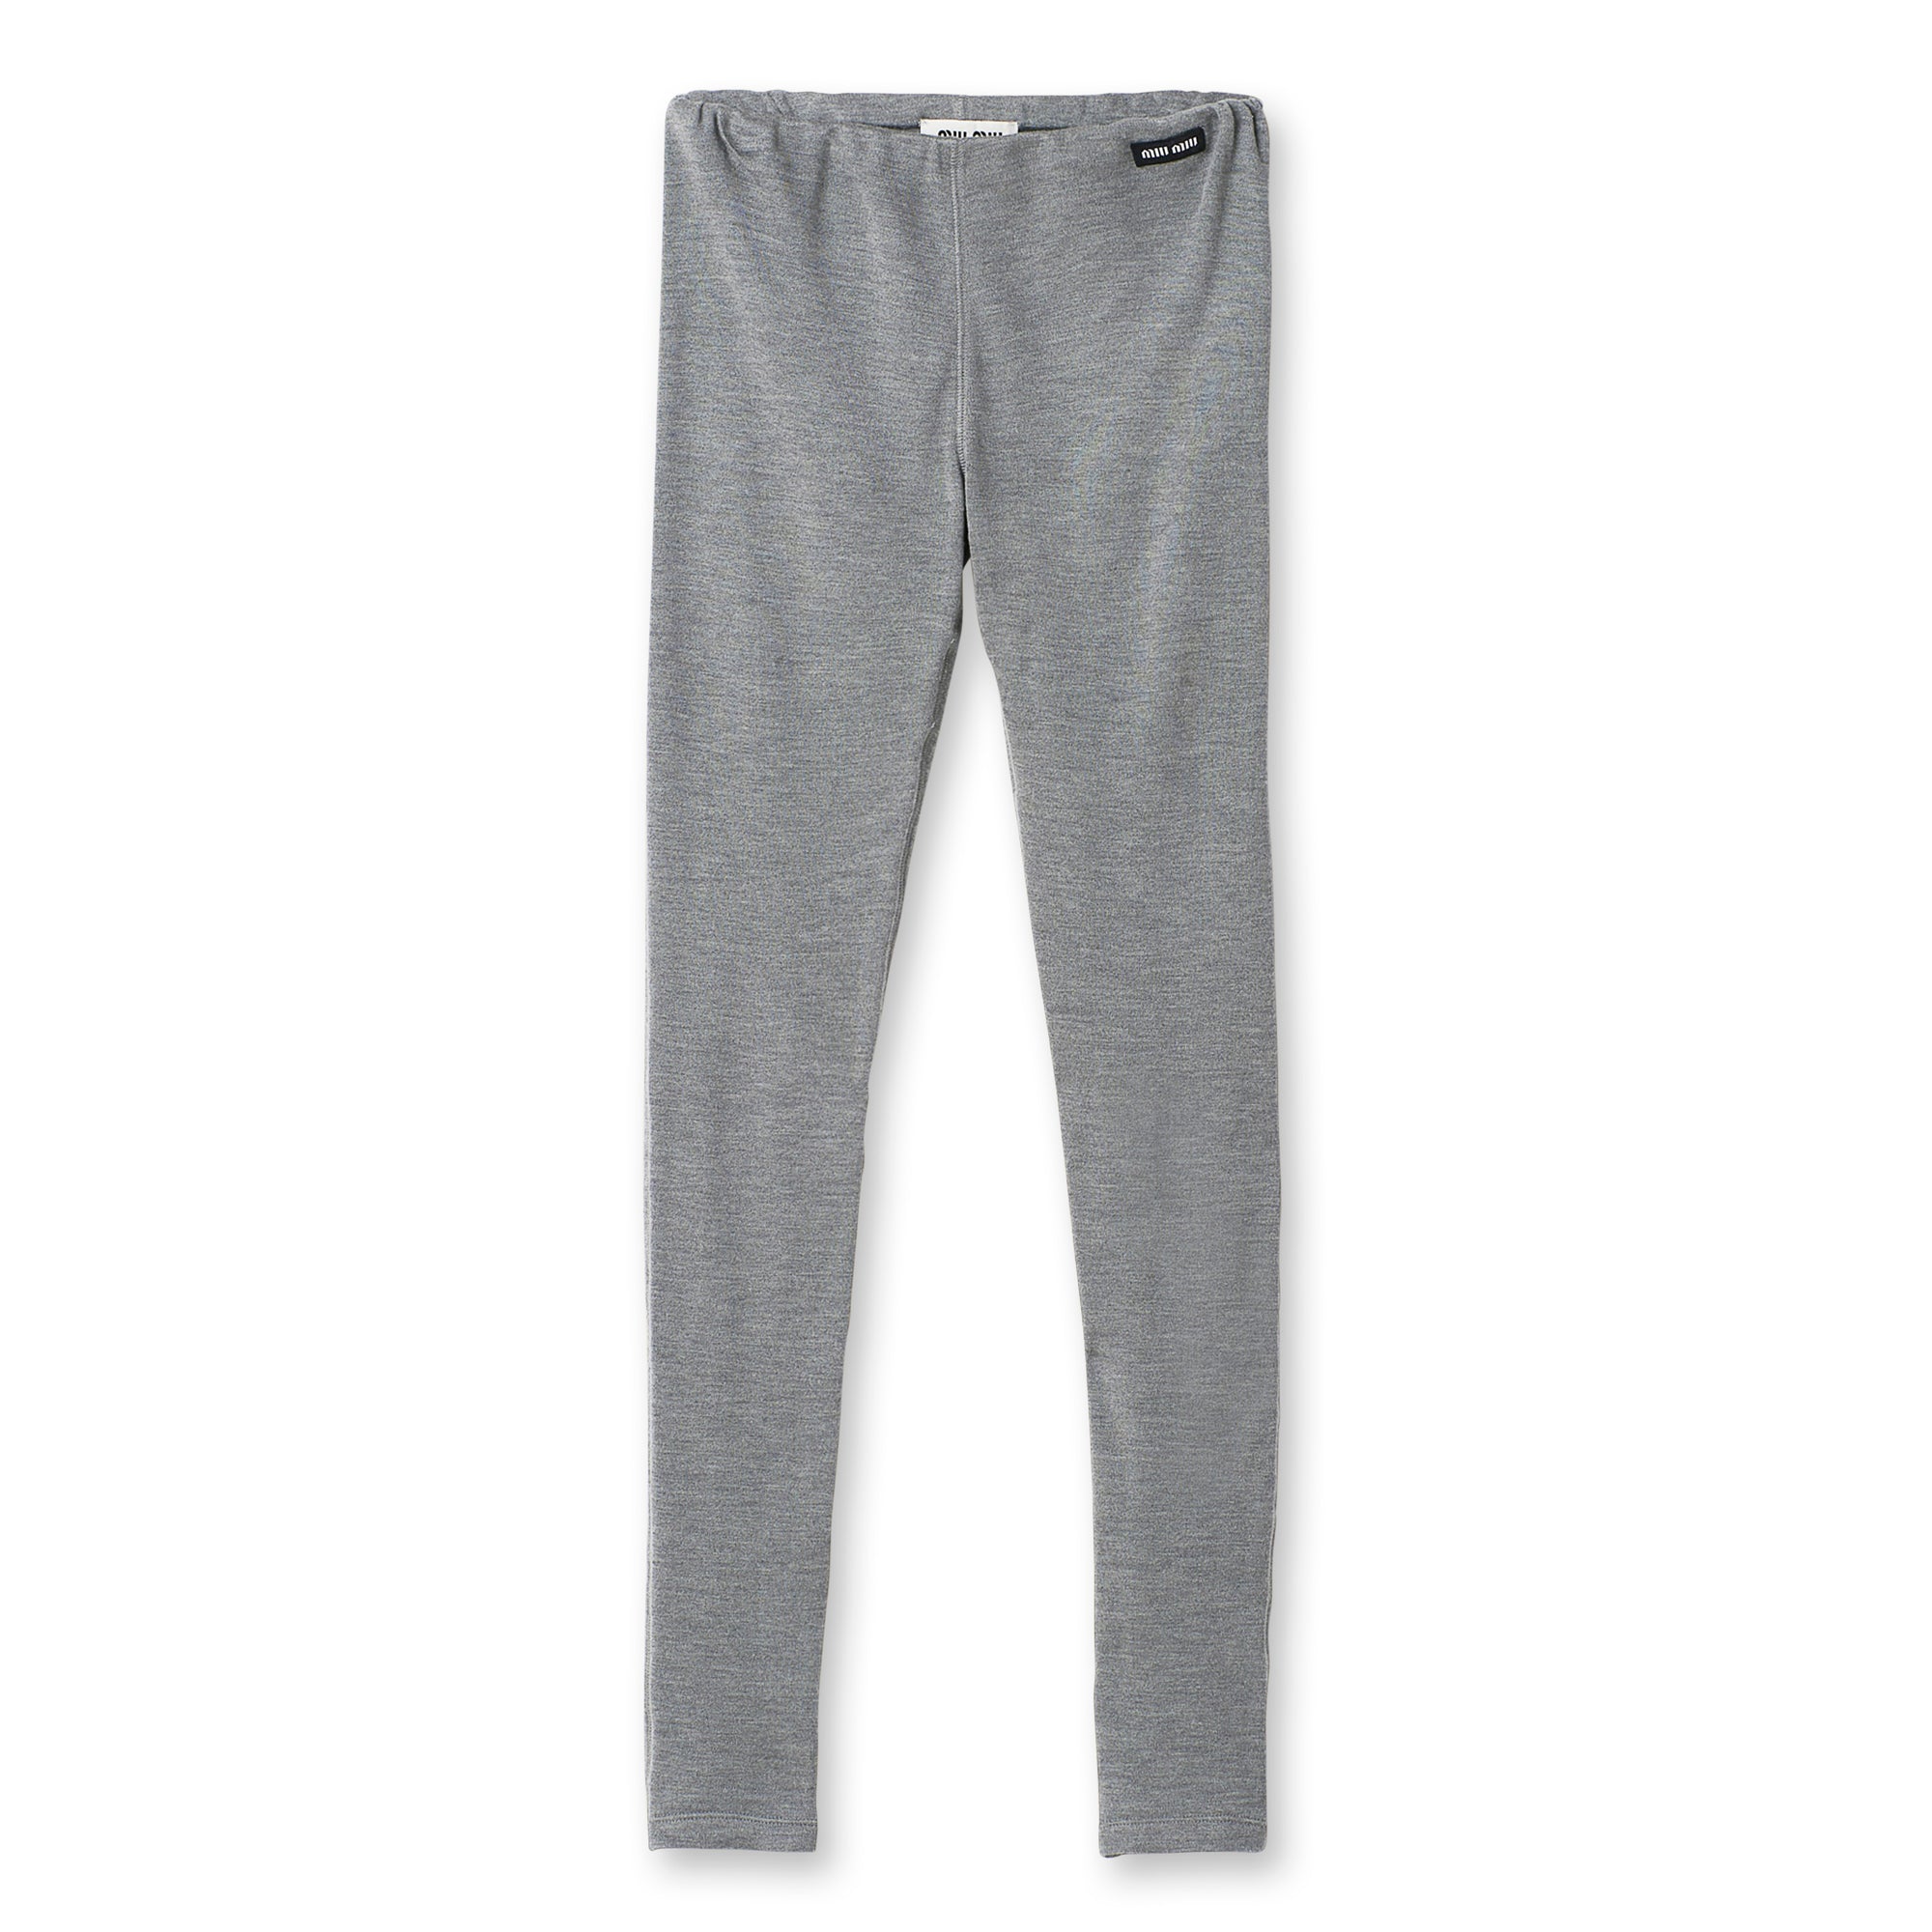 Miu Miu - Women’s Silk Jersey Pants - (Grey) view 1